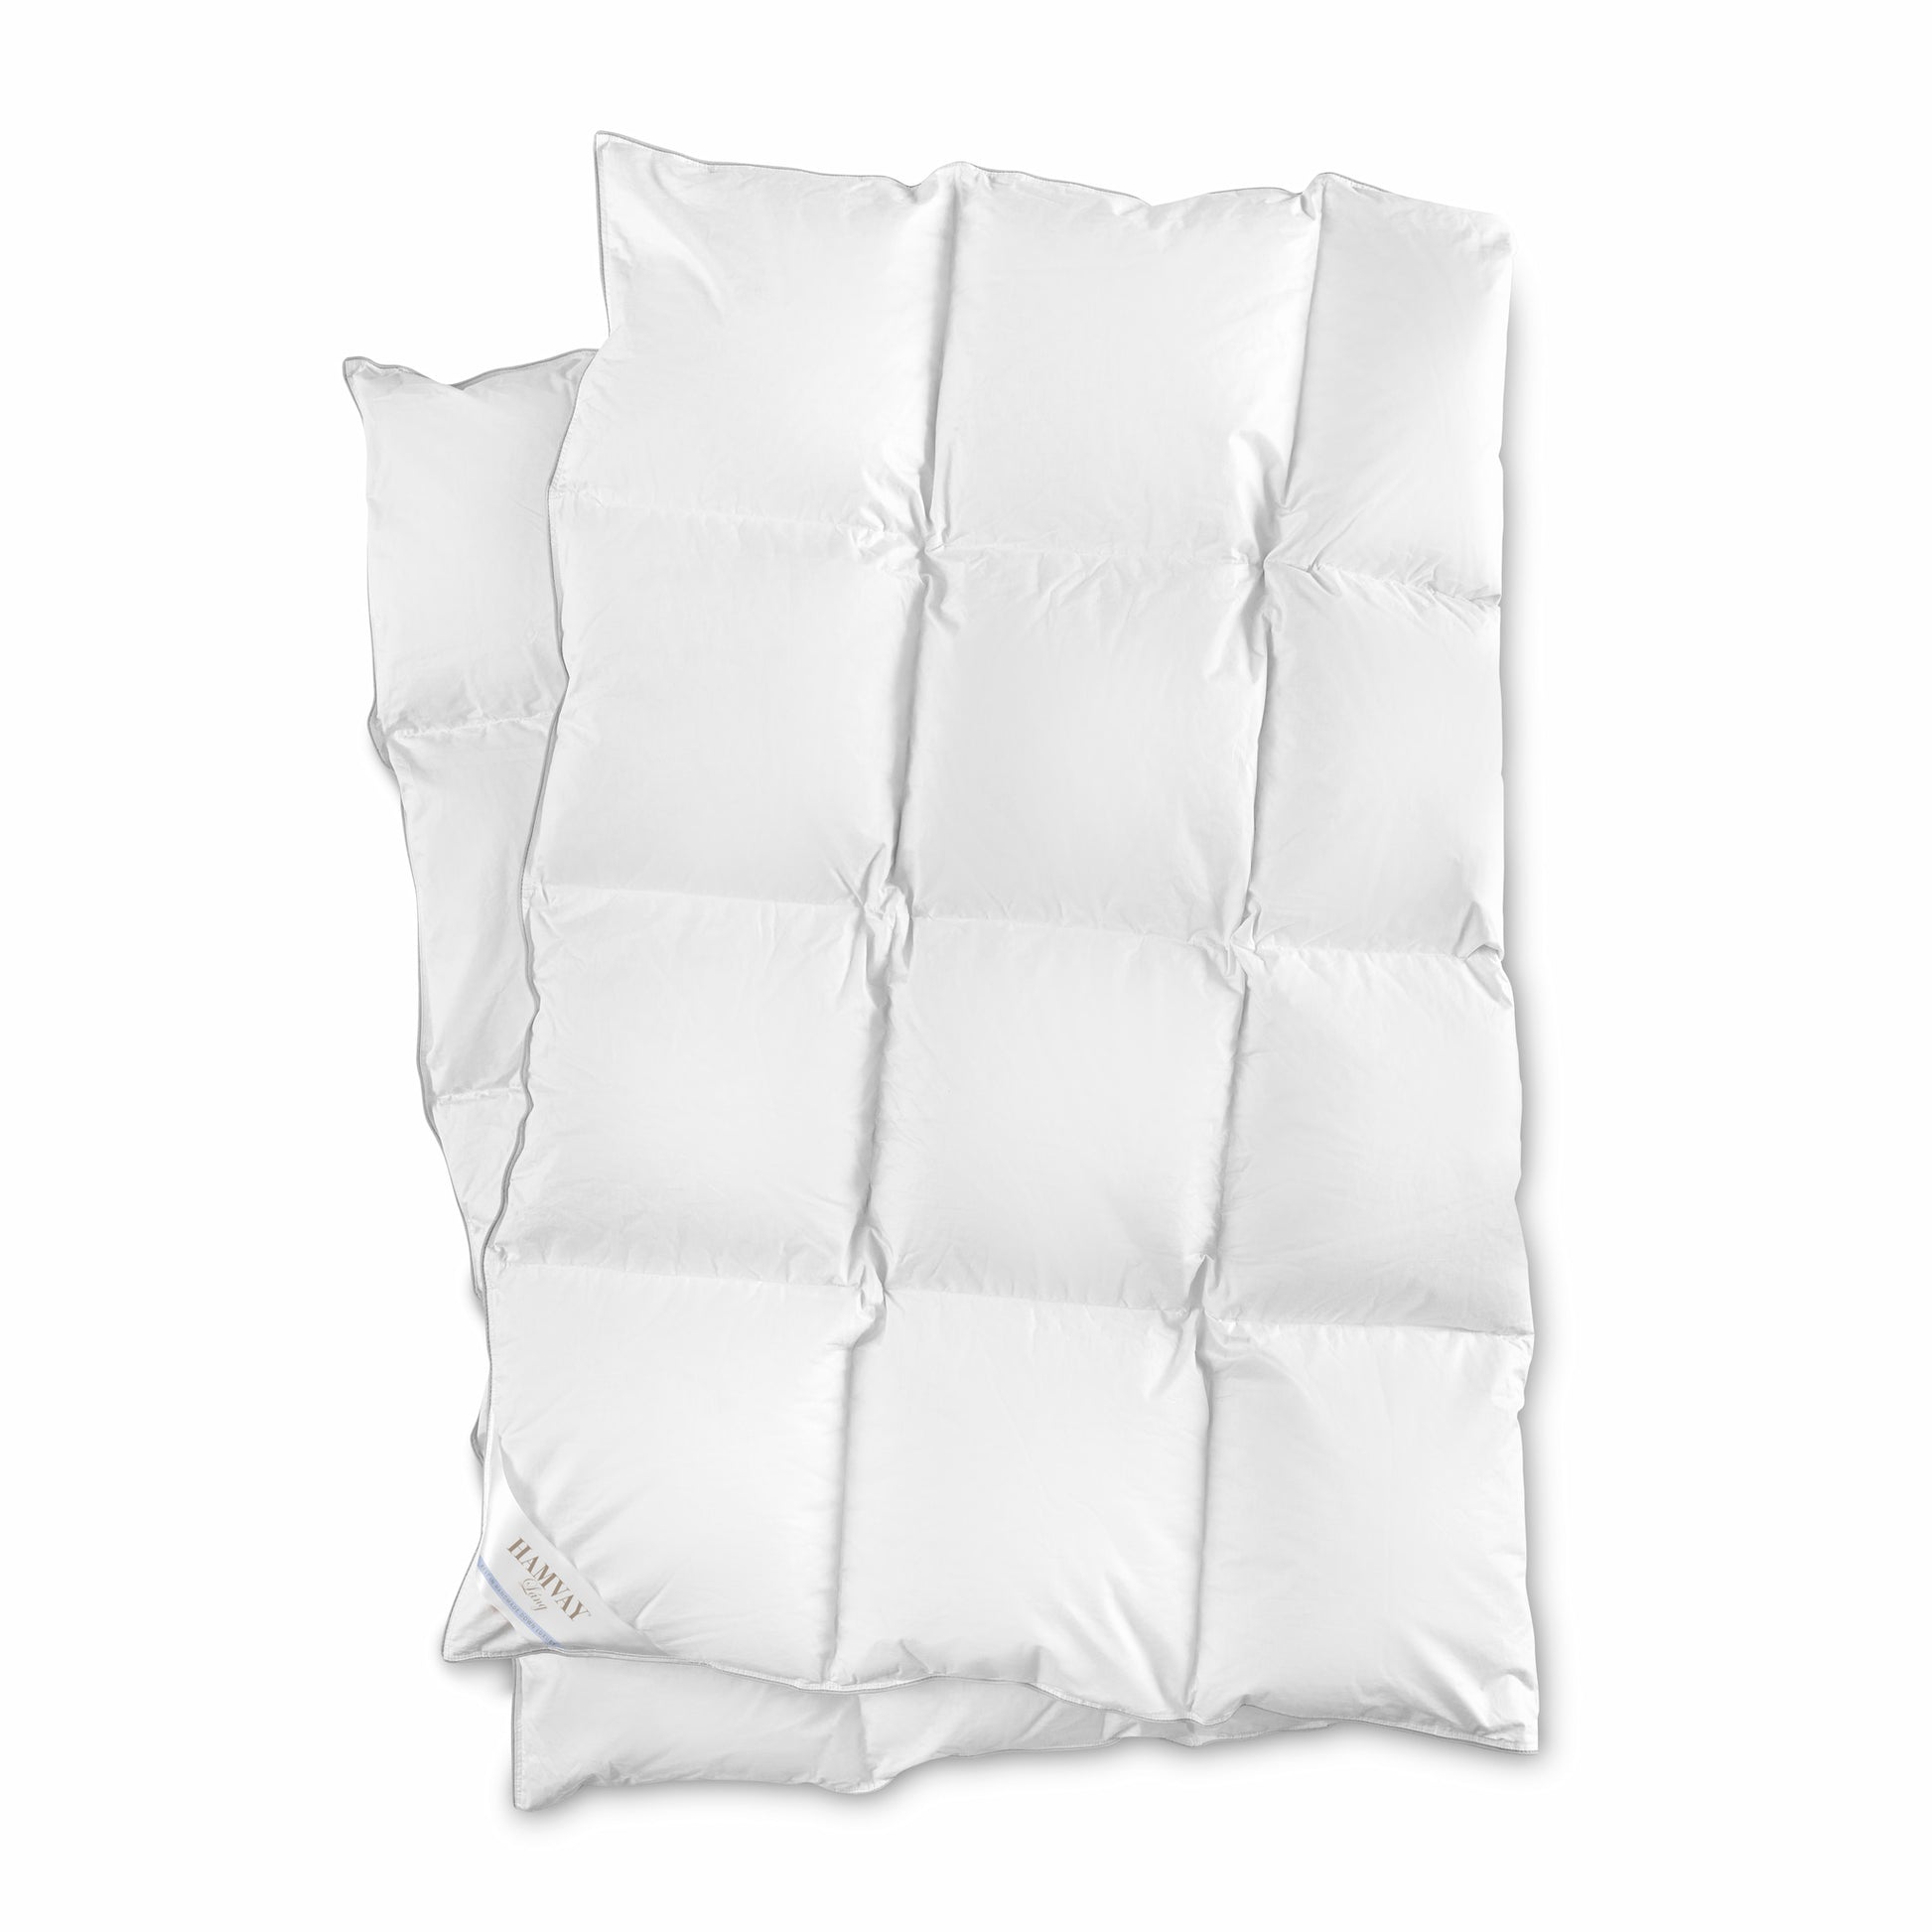 Loops & Threads Premium Pillow Form - Each